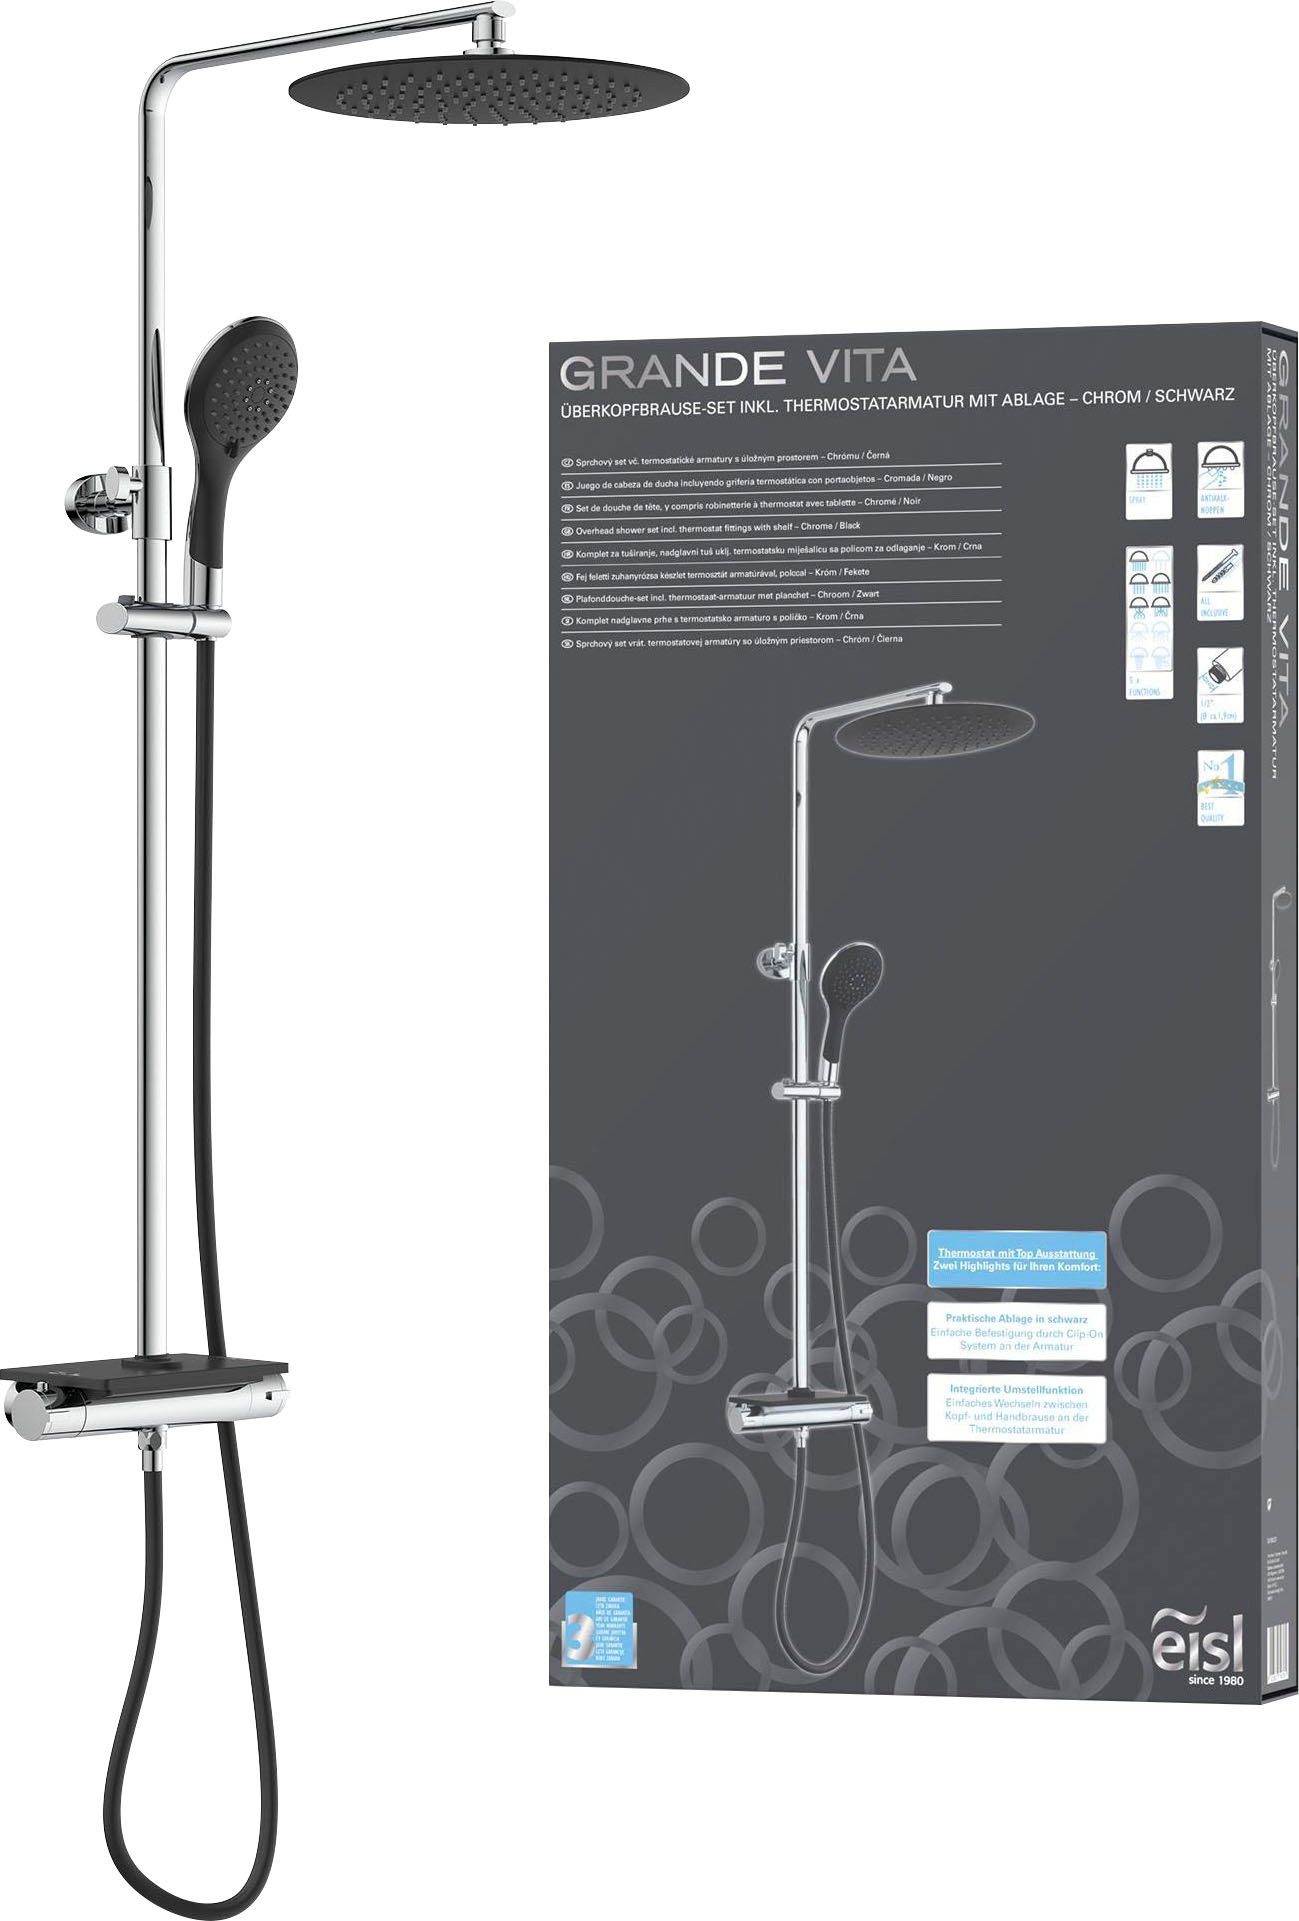 Eisl Brausegarnitur Grande Vita, Höhe 101 cm, Duschsystem mit Thermostat und Ablage, Regendusche mit Wandhalterung schwarz-chromfarben